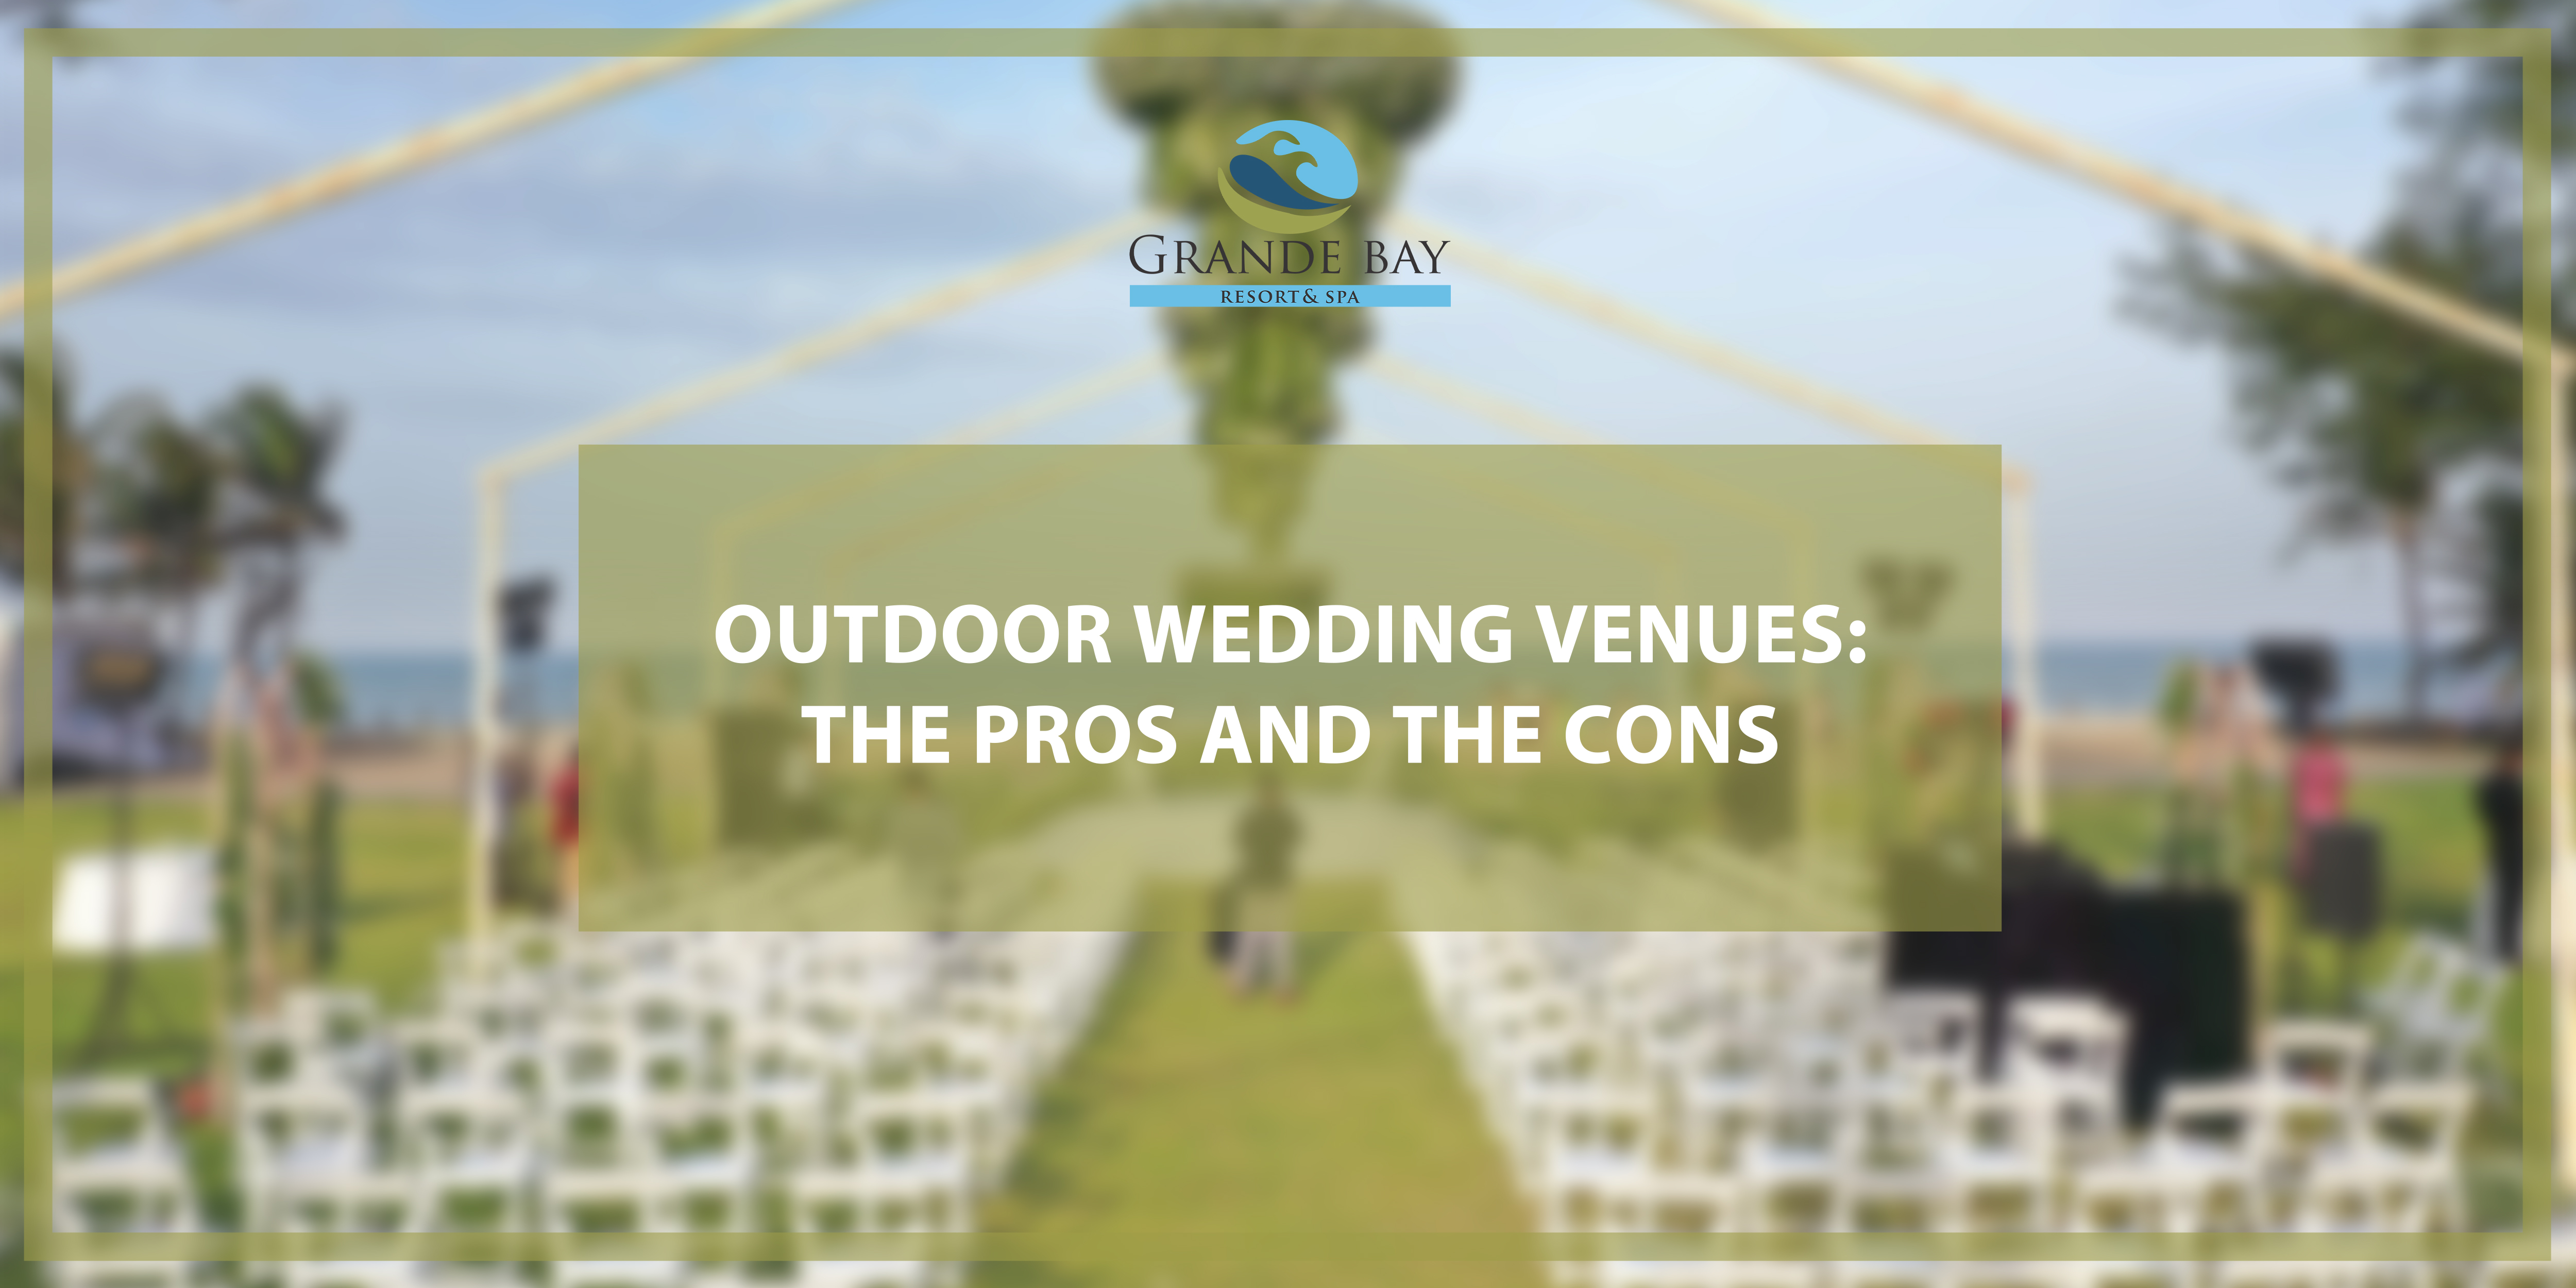 Outdoor wedding venues